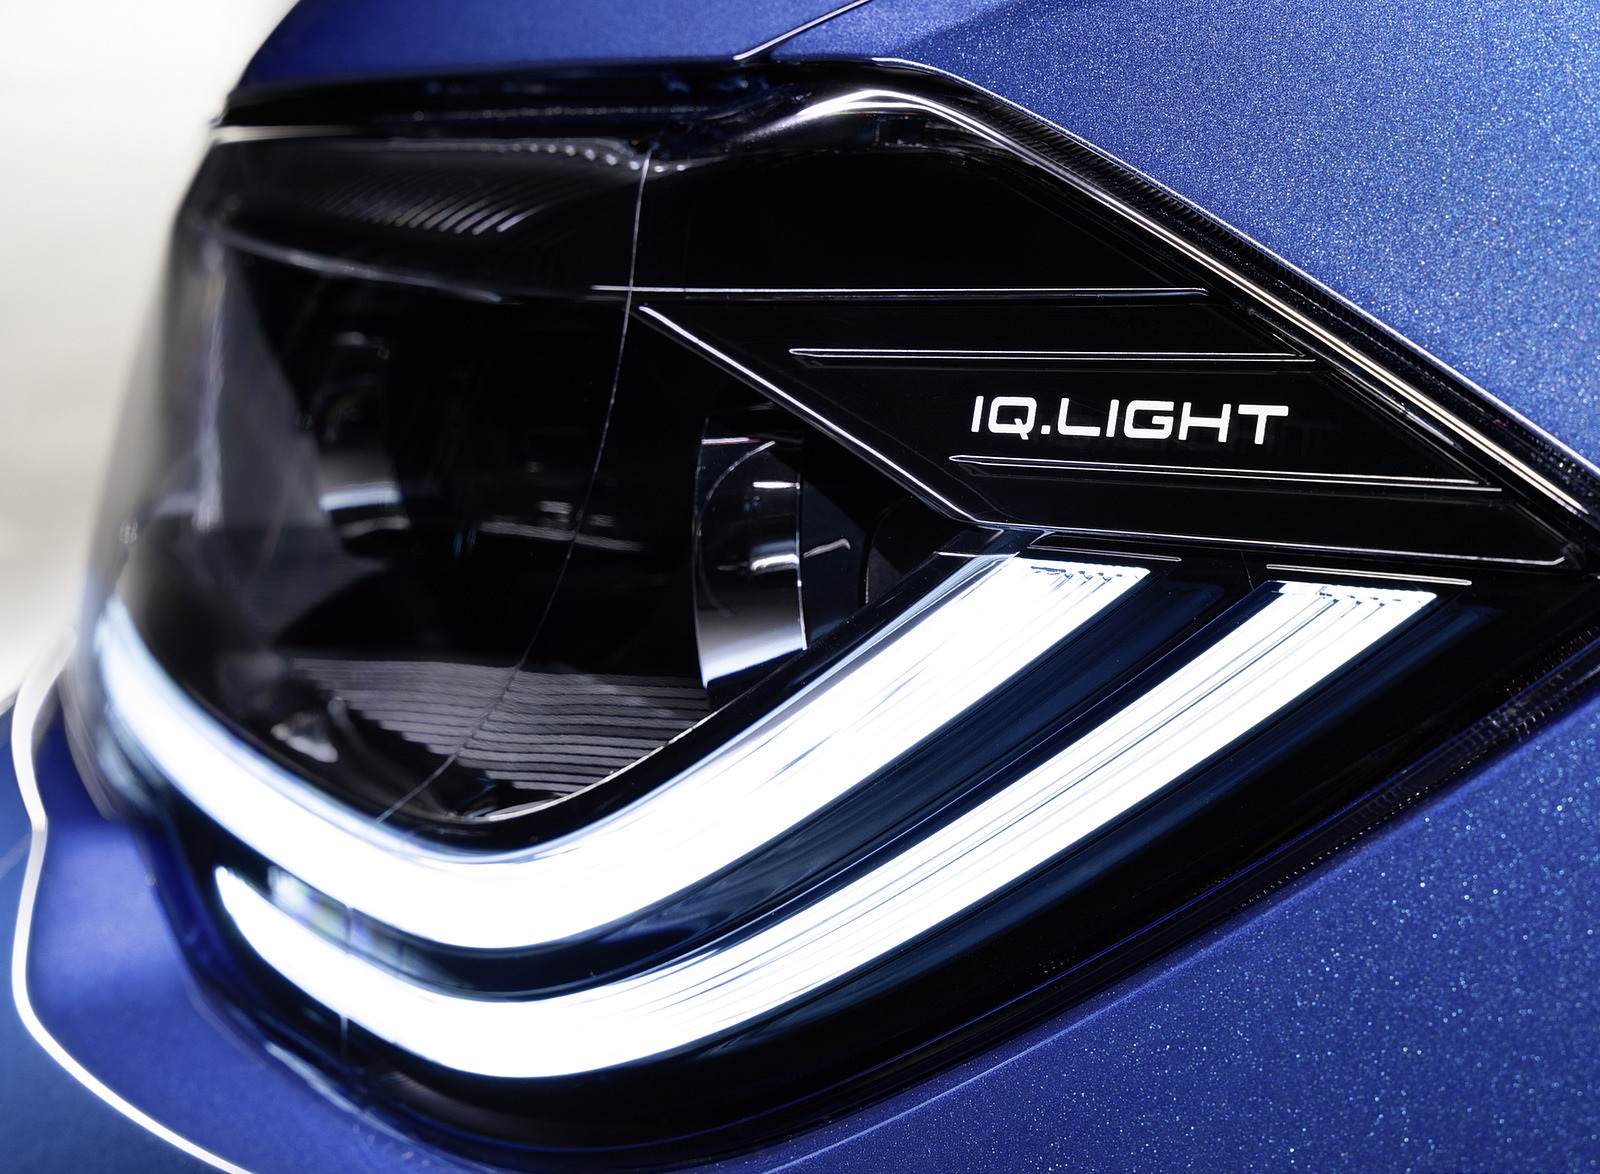 2022 Volkswagen Polo Headlight Wallpapers #12 of 46